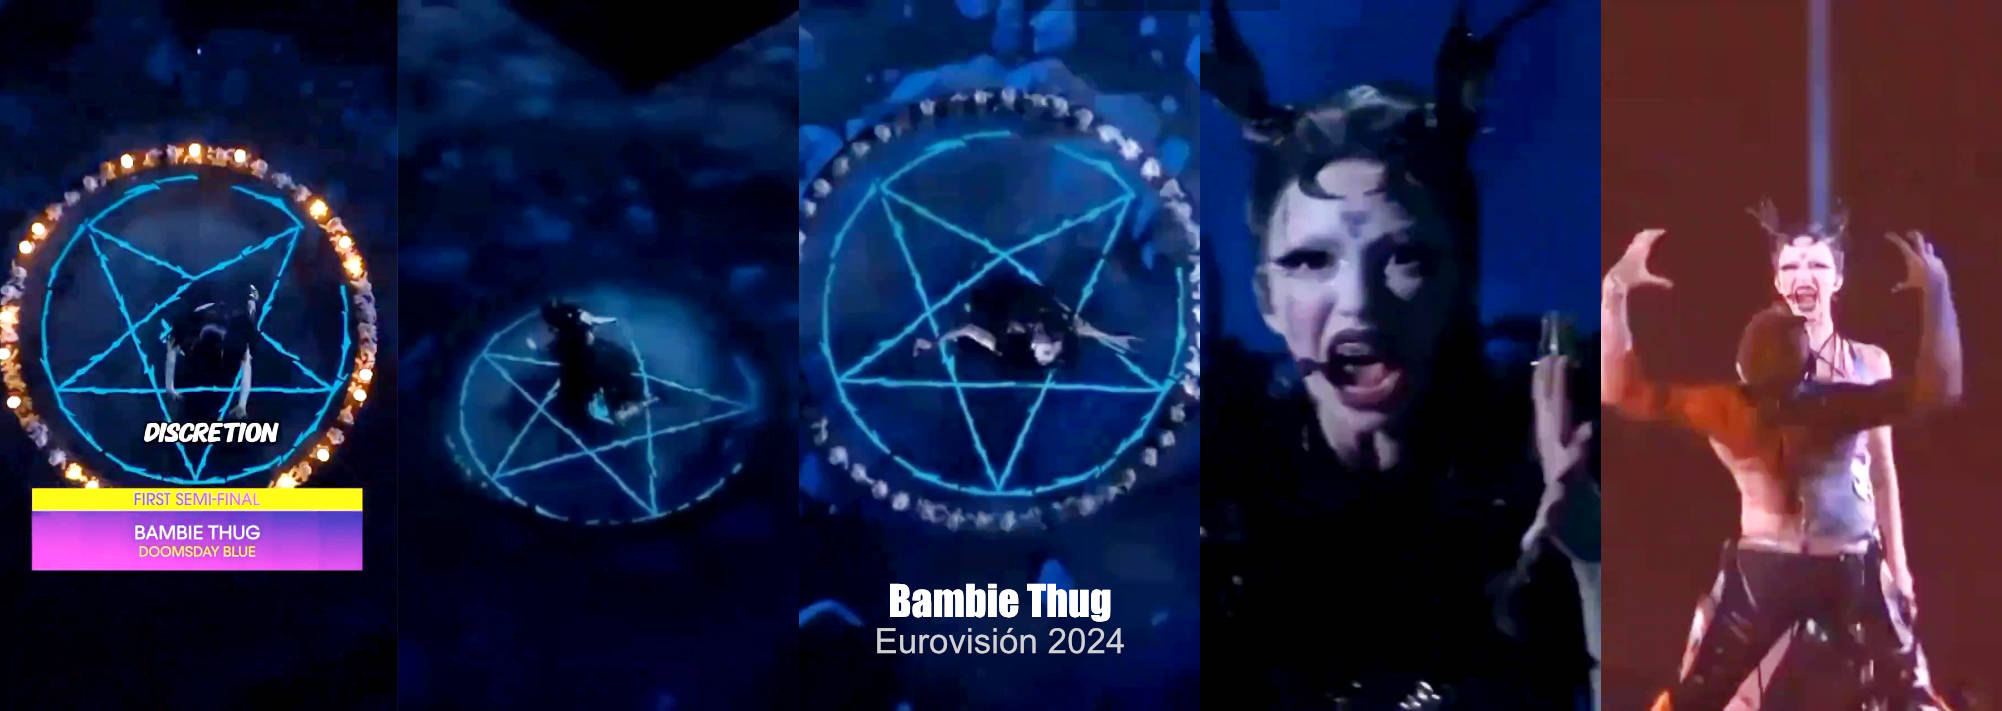 Bambie Thug (Eurovisión 2024) Pentagarama.jpg